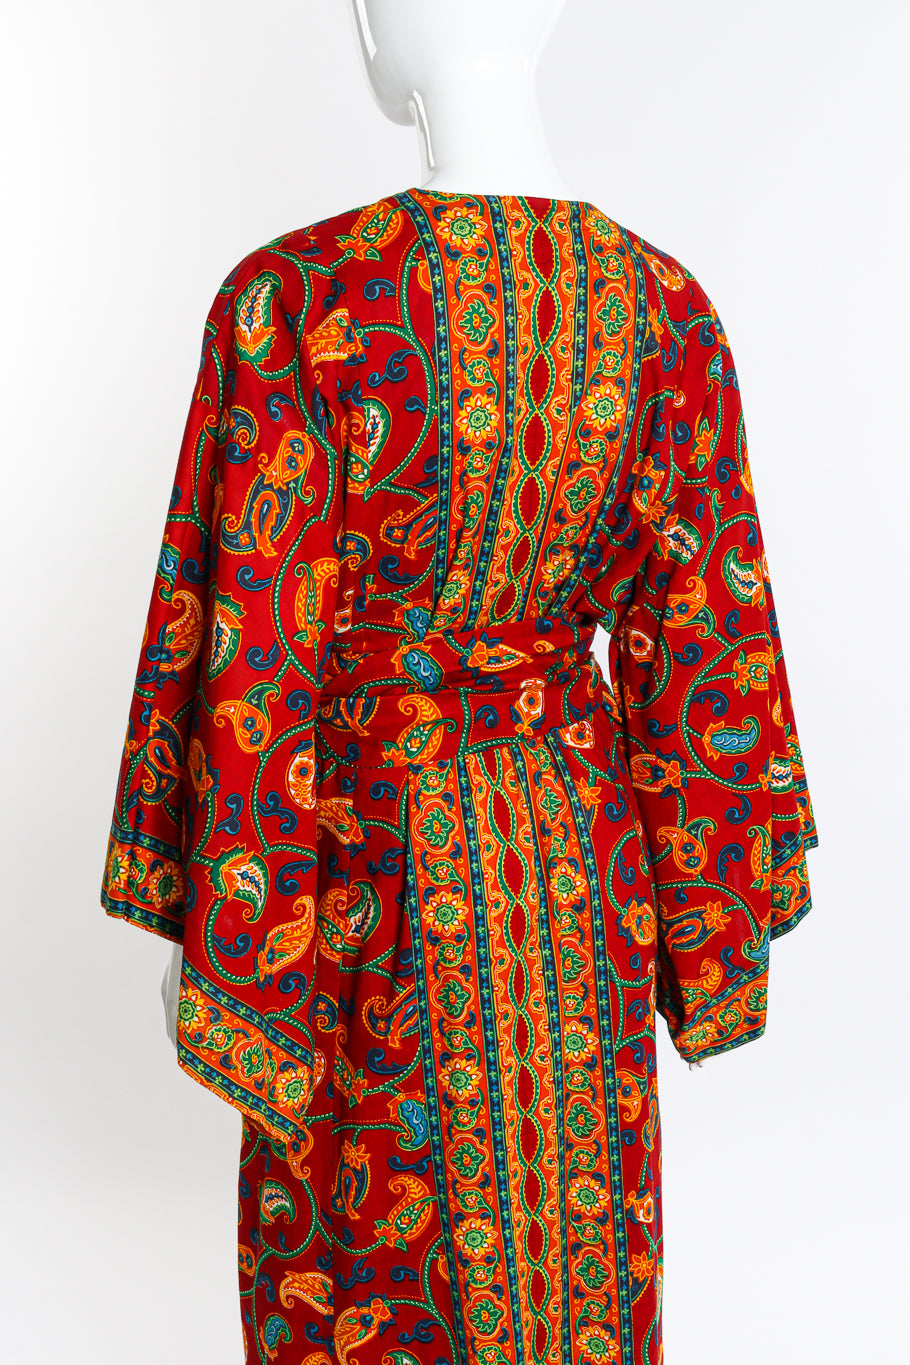 Vintage Neiman Marcus Floral Paisley Kimono Robe back on mannequin closeup @recess la